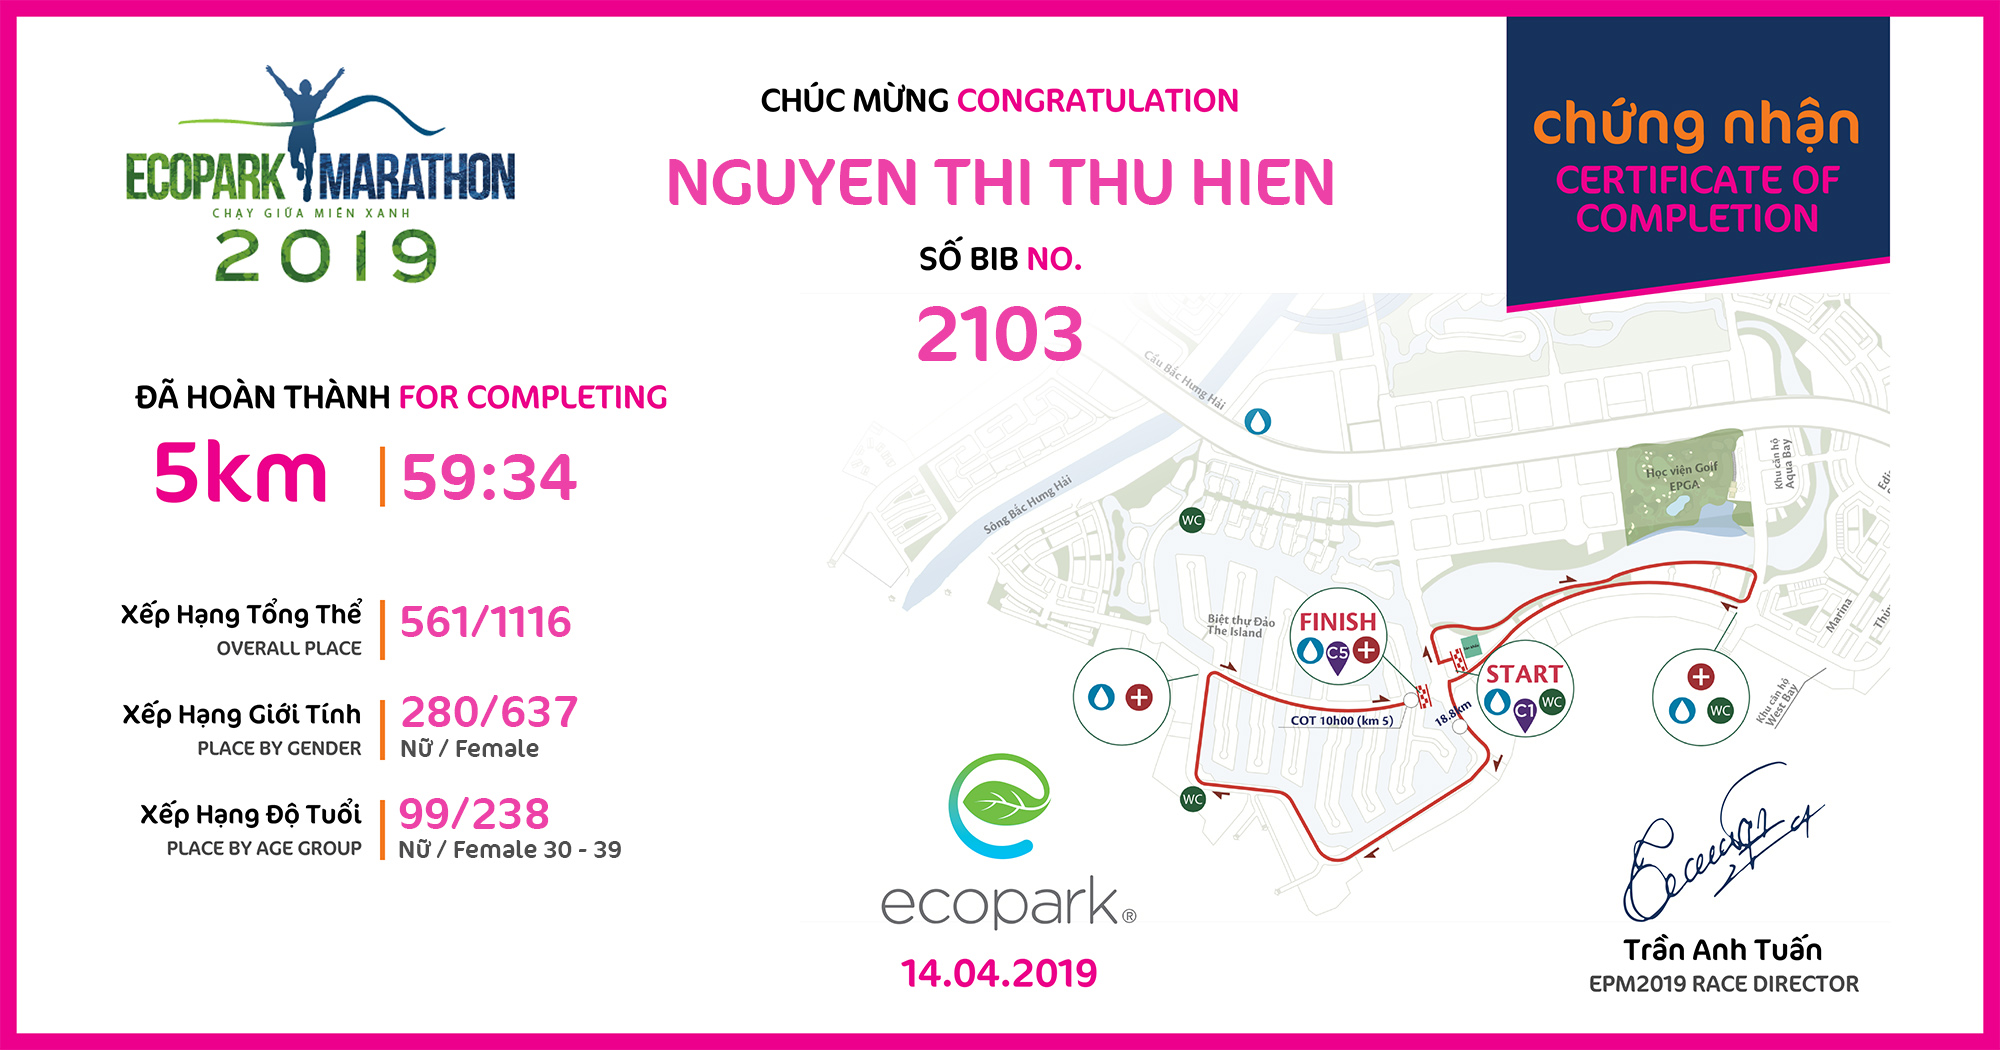 2103 - Nguyen Thi Thu Hien